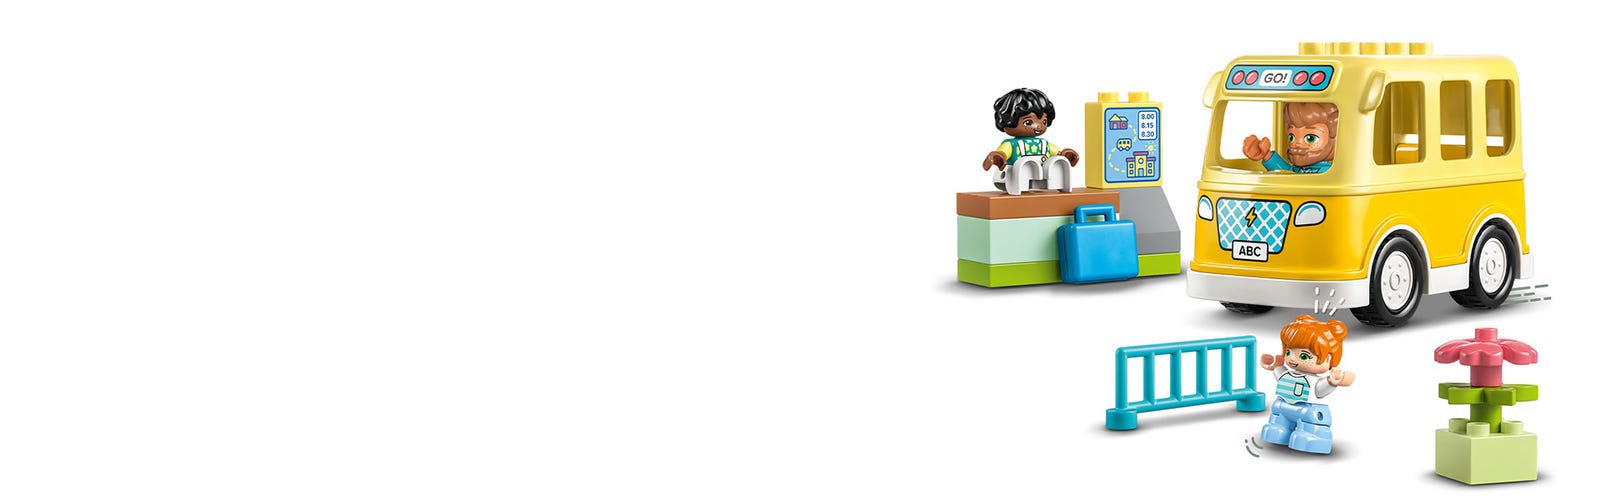 LEGO 10988 Duplo Paseo en Autobús, Juguete Educativo para Desarrollar  Habilidades Sociales y Motricidad Fina. Más de 2 Años